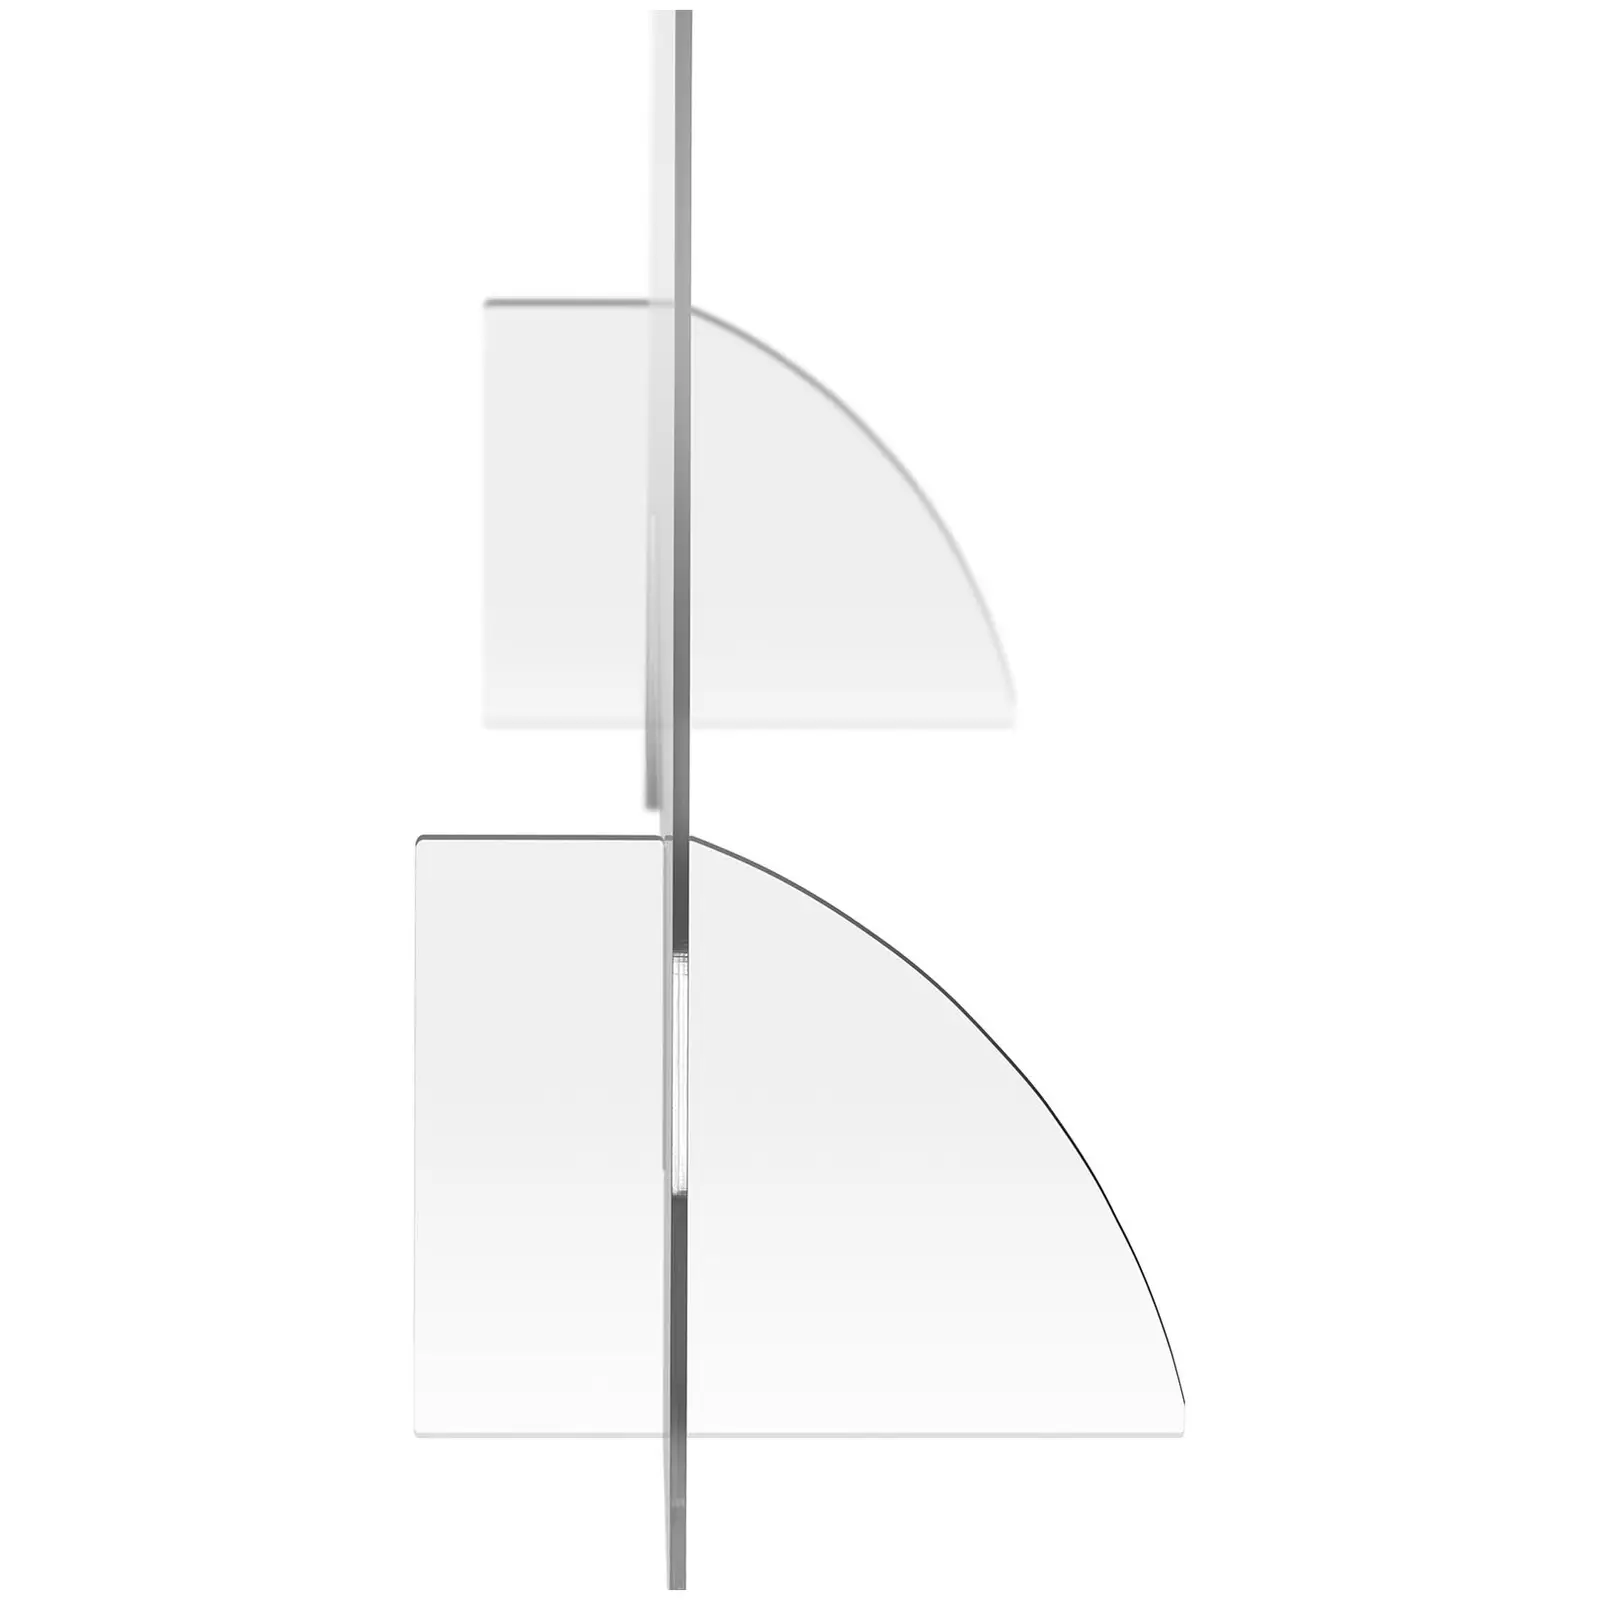 Protection plexiglass - 95 x 65 cm - Verre acrylique - Passe-documents 45 x 15 cm